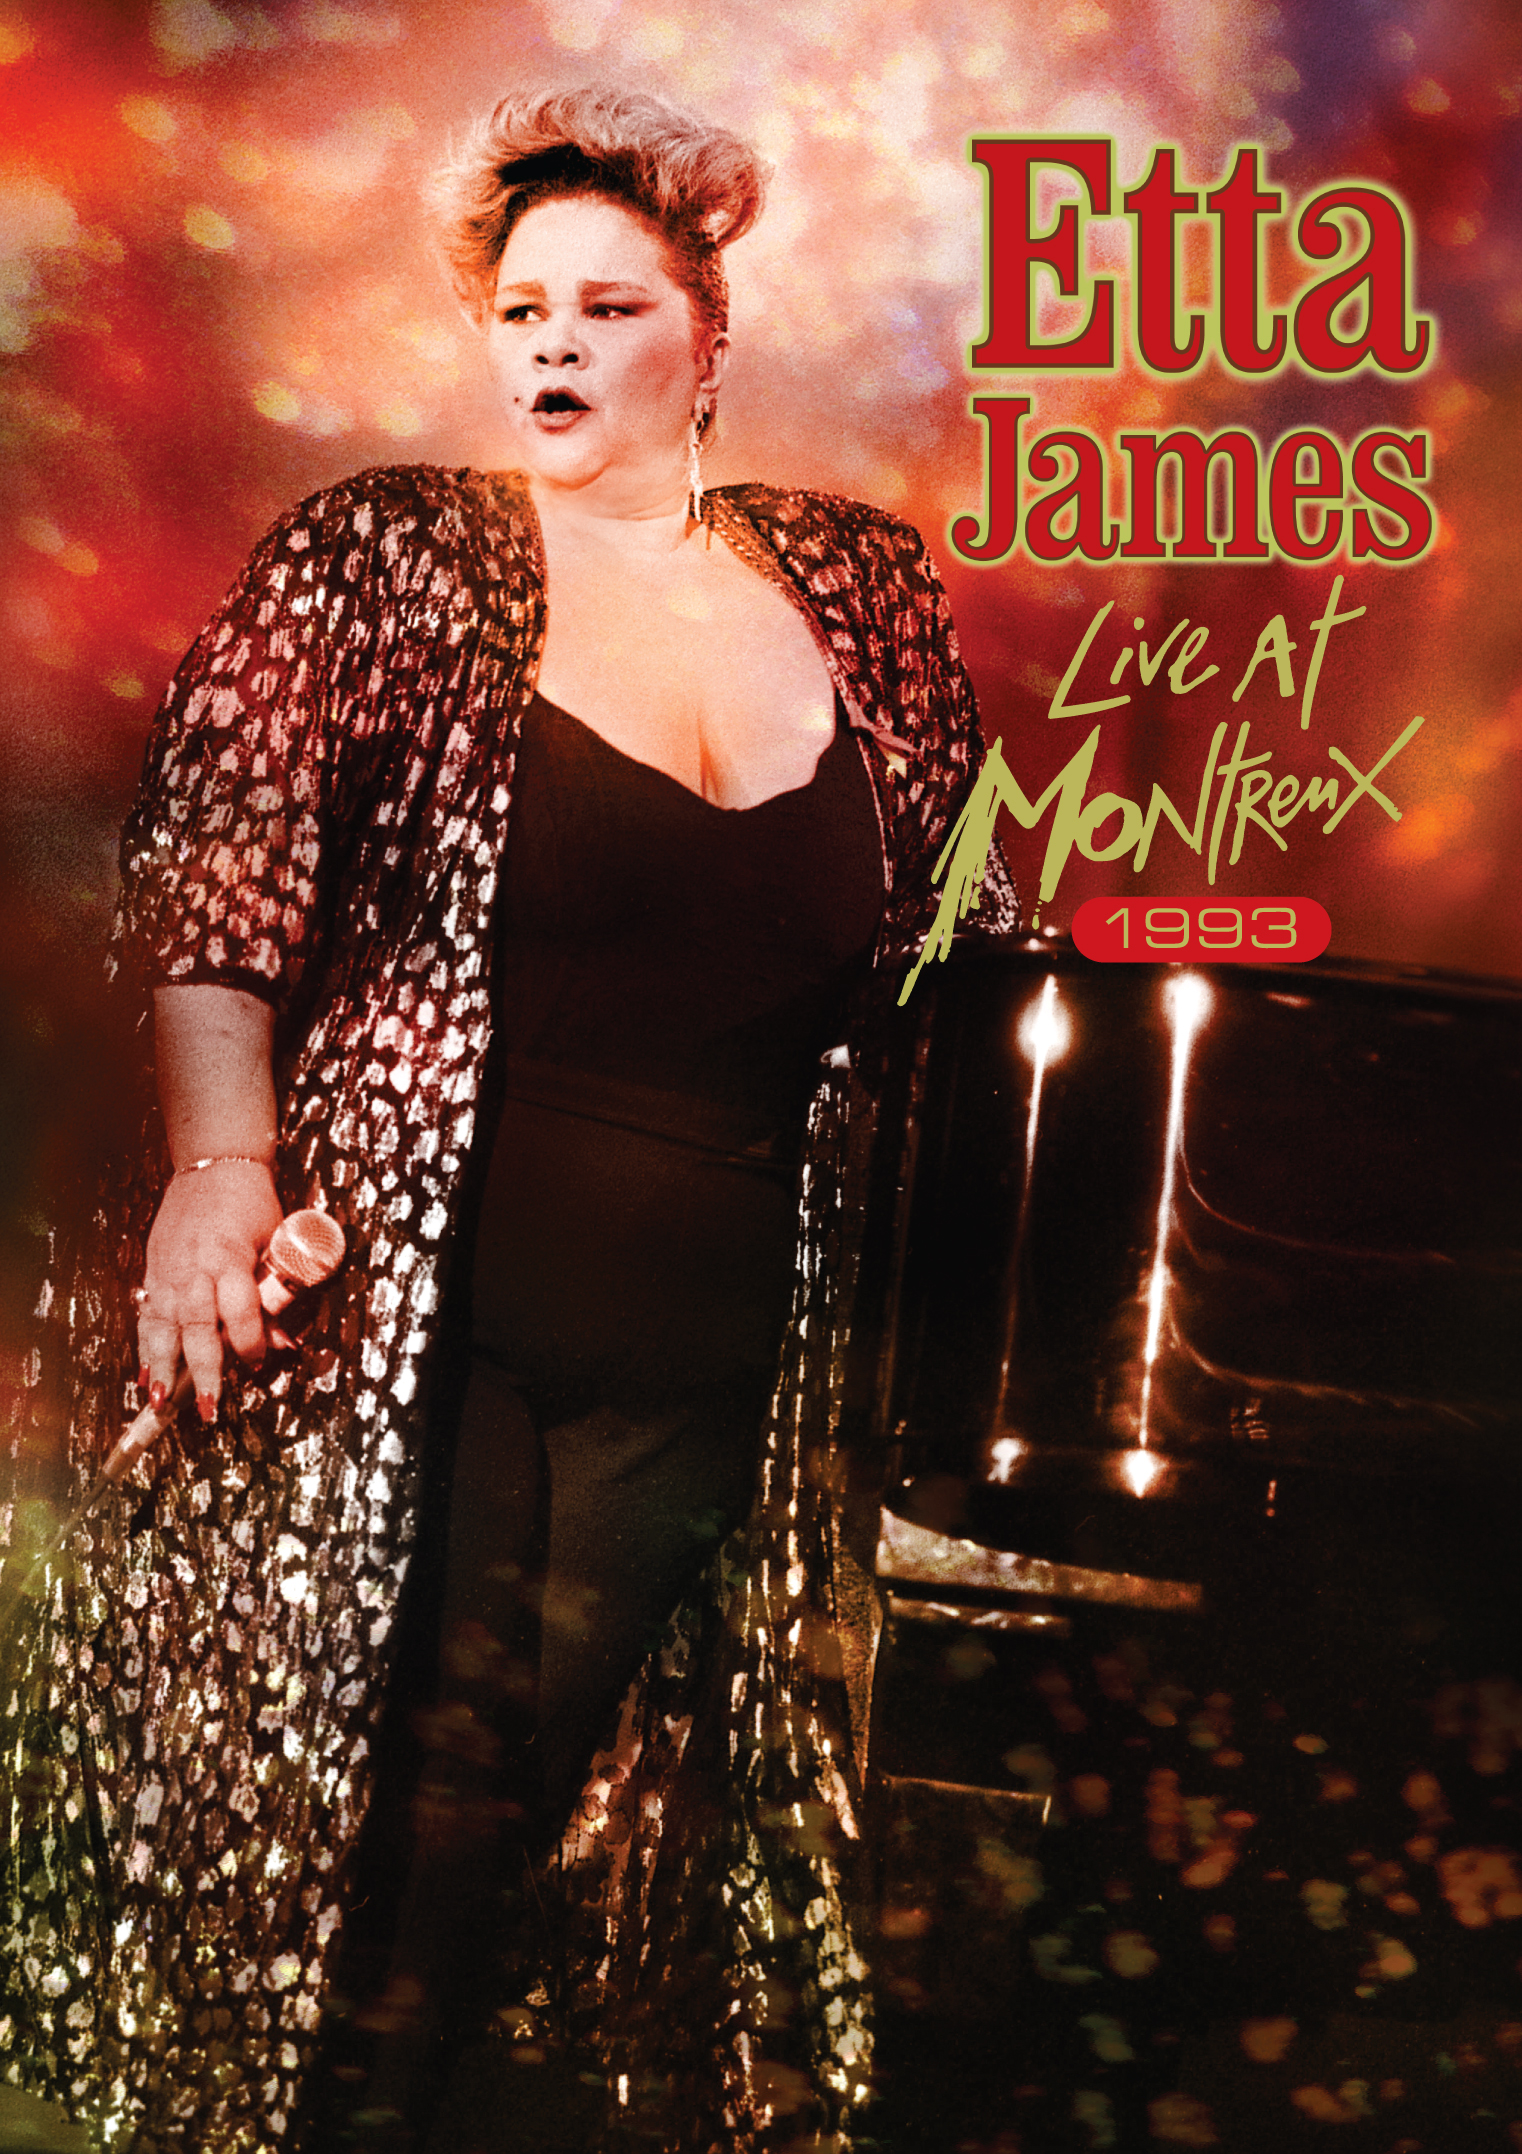 Etta James Montreux